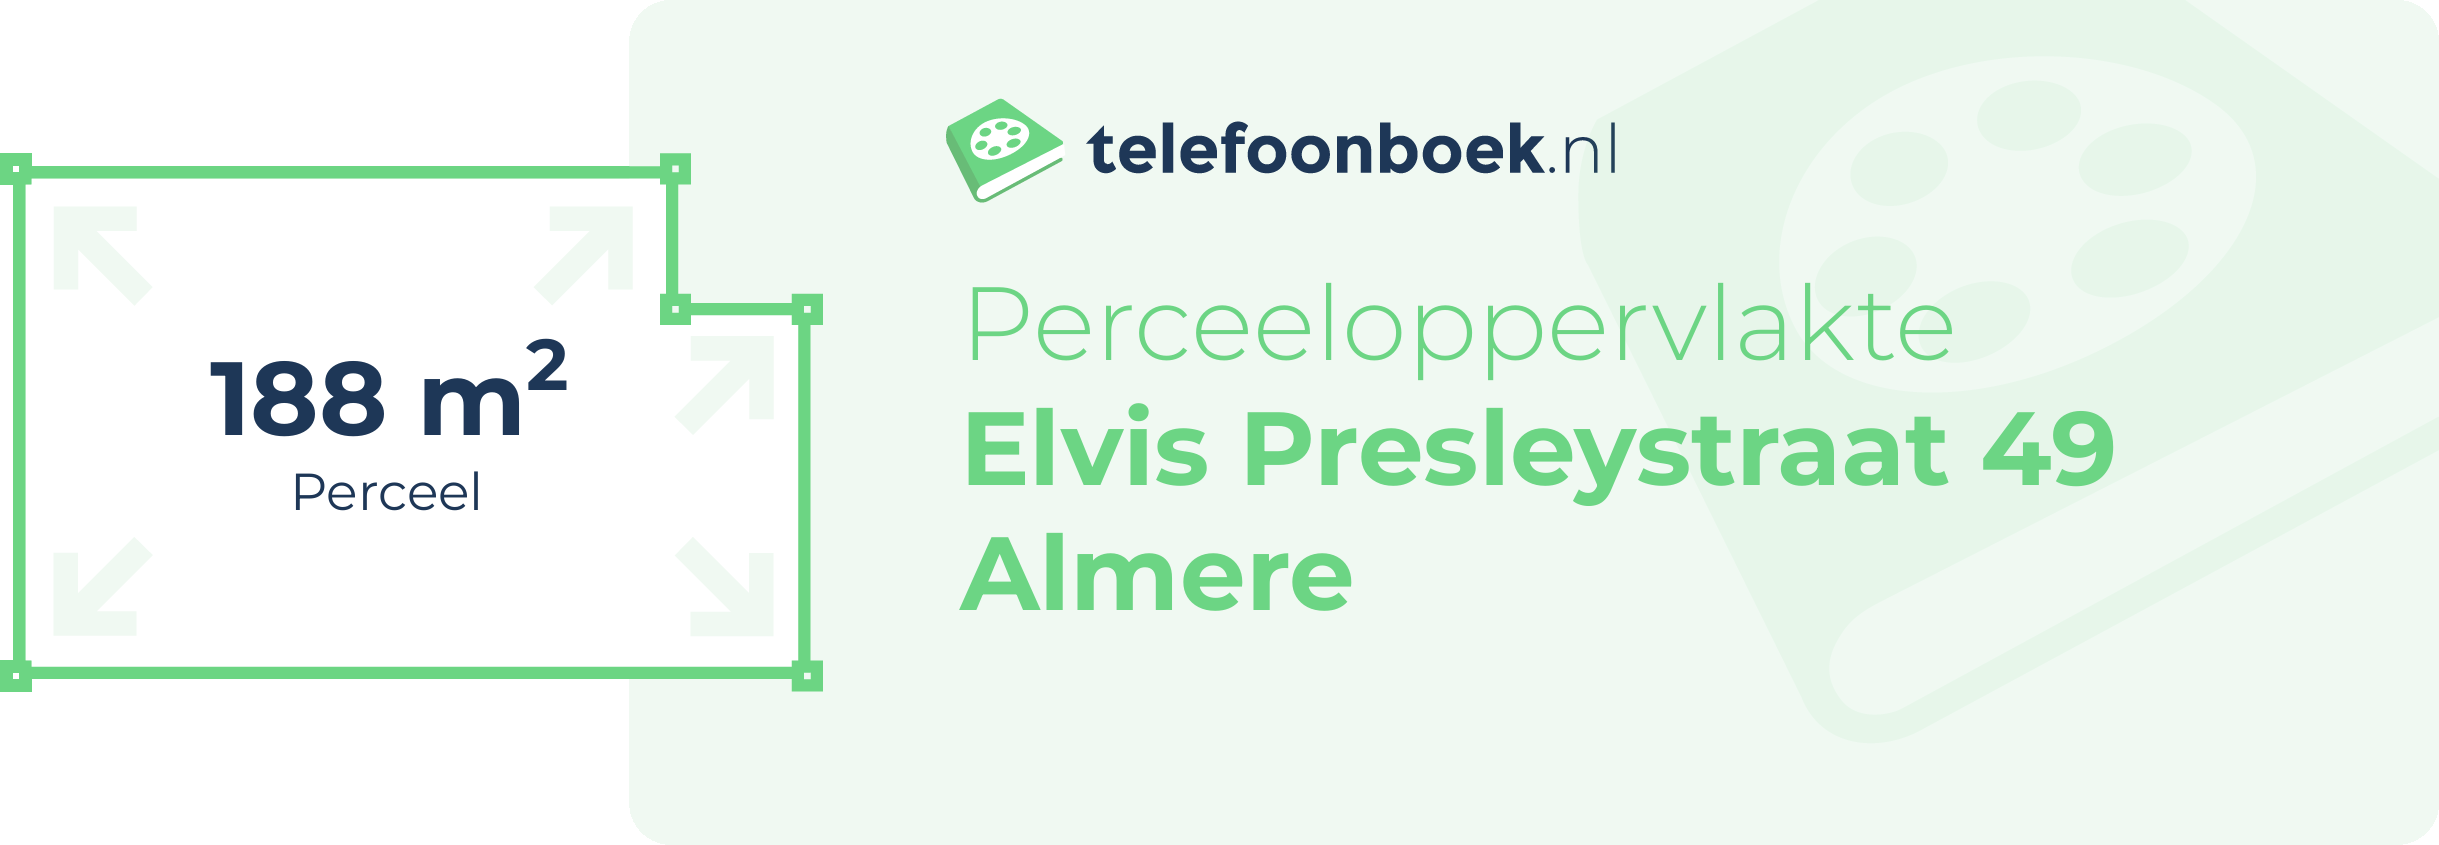 Perceeloppervlakte Elvis Presleystraat 49 Almere